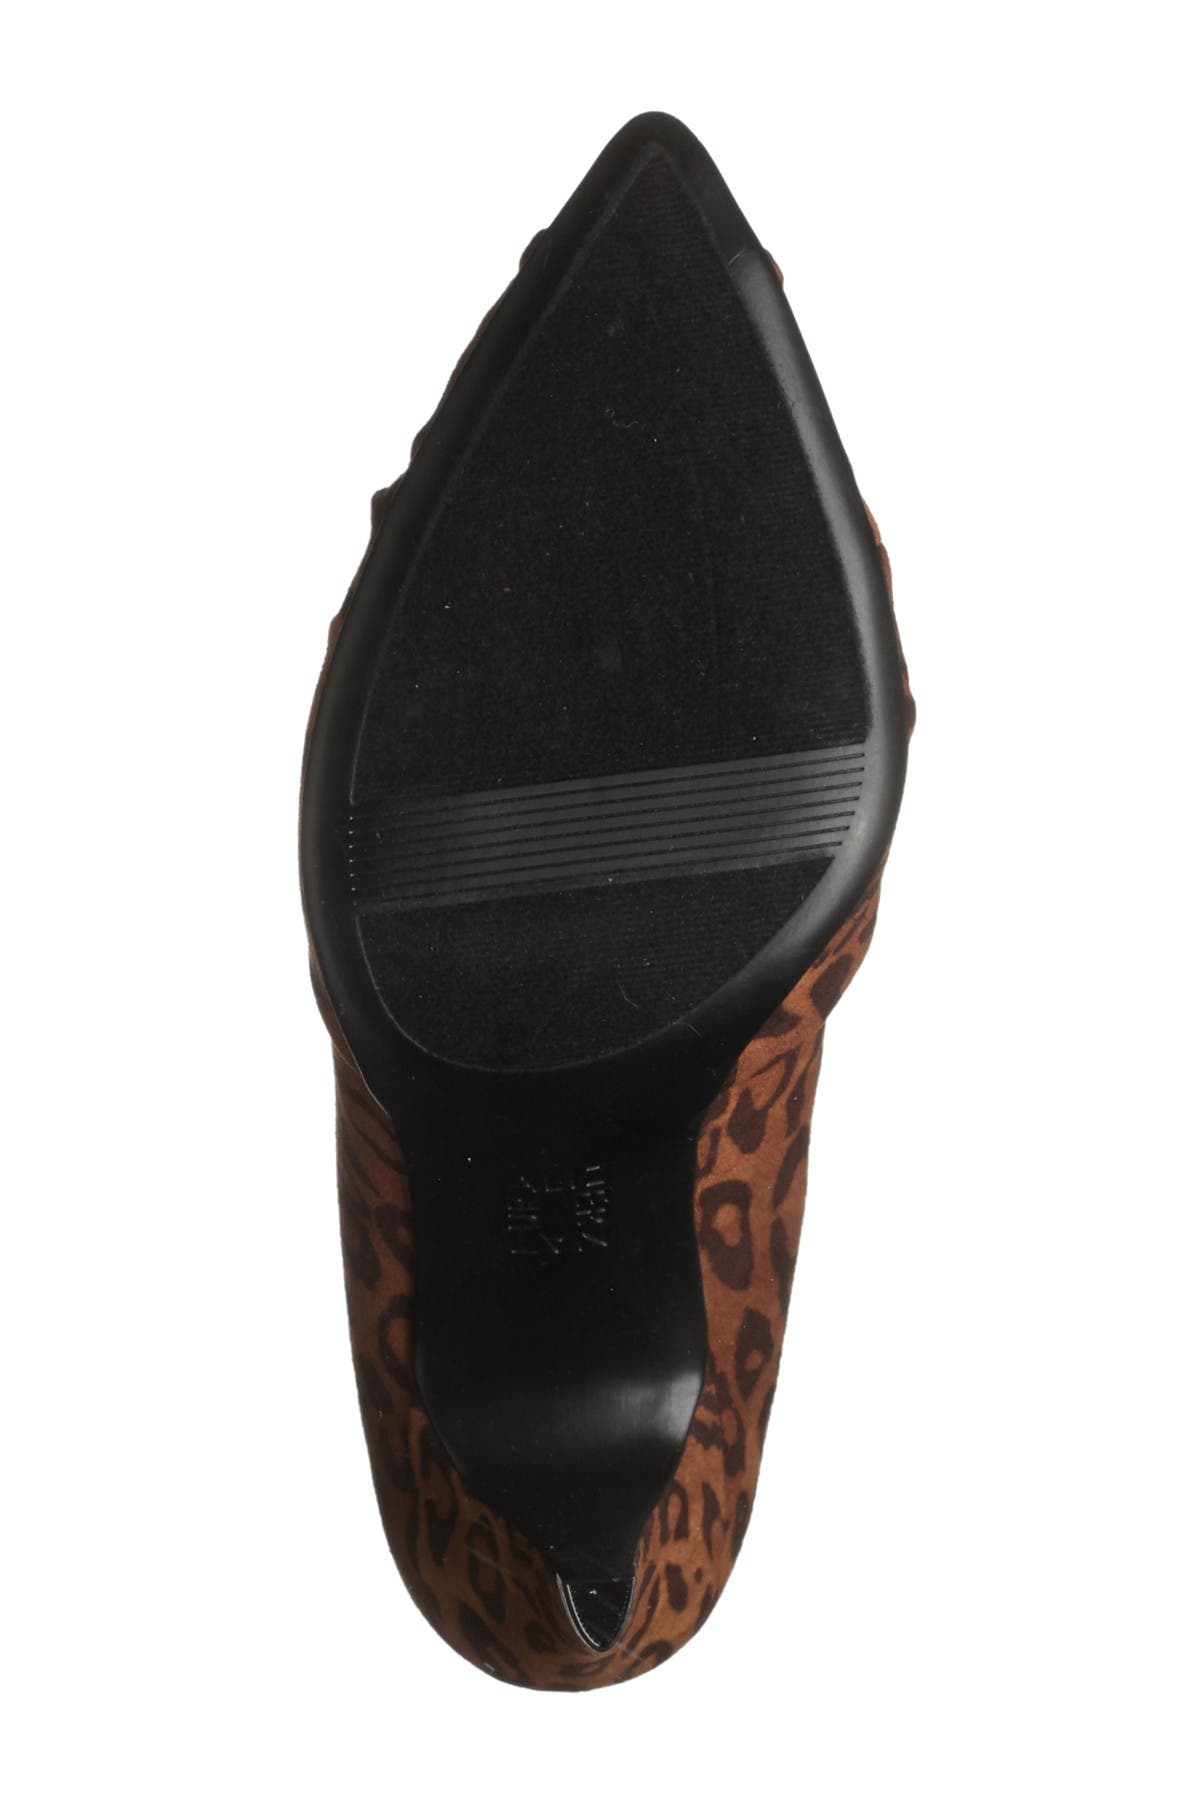 naturalizer leopard print shoes